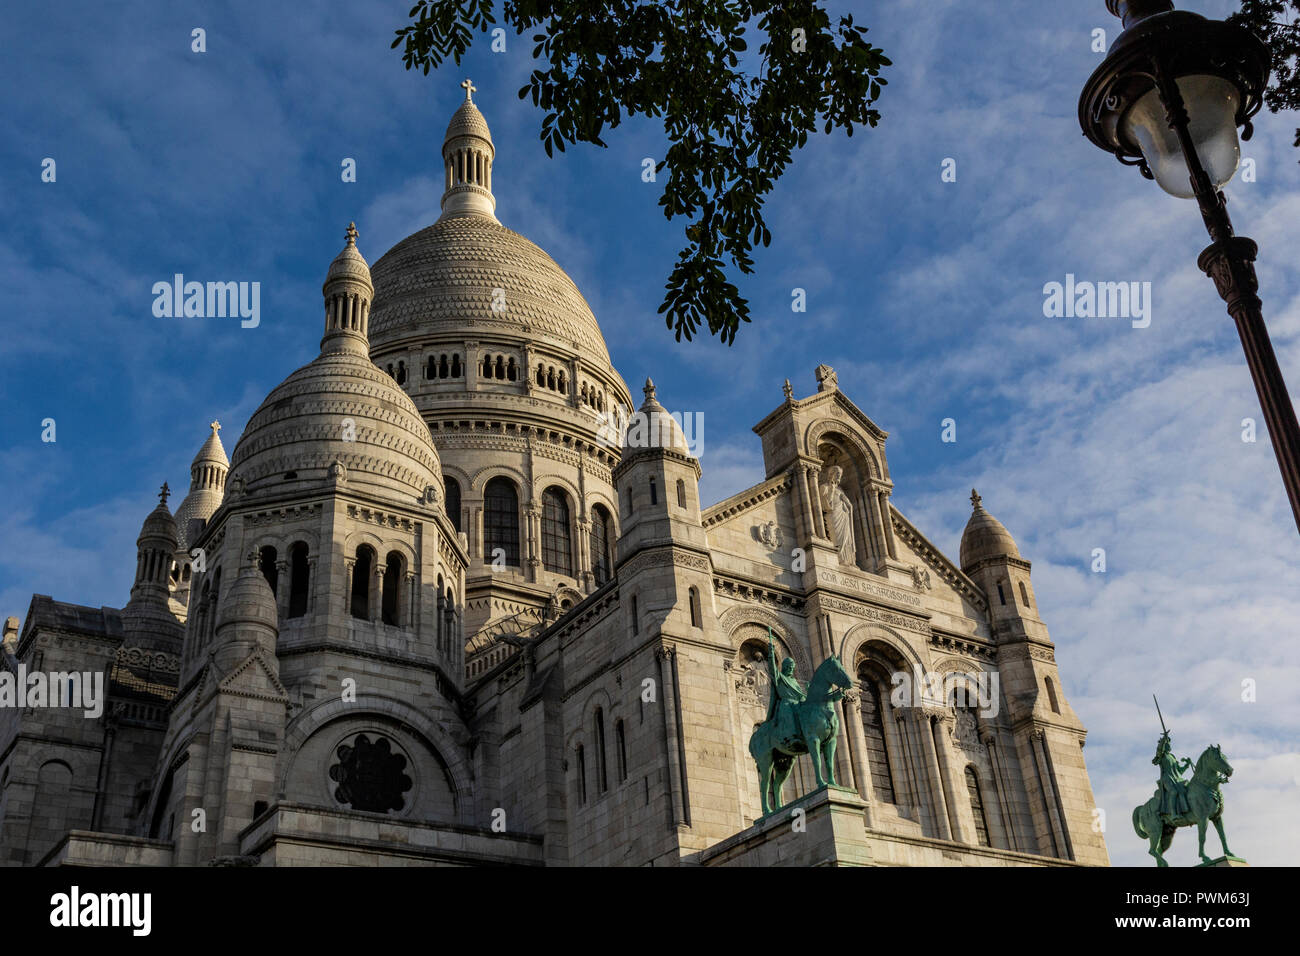 Basilique du Sacre Coeur de Montmartre, la Basílica del Sagrado Corazón de París se conoce normalmente como el Sacre Coeur es el segundo más visitado monum Foto de stock